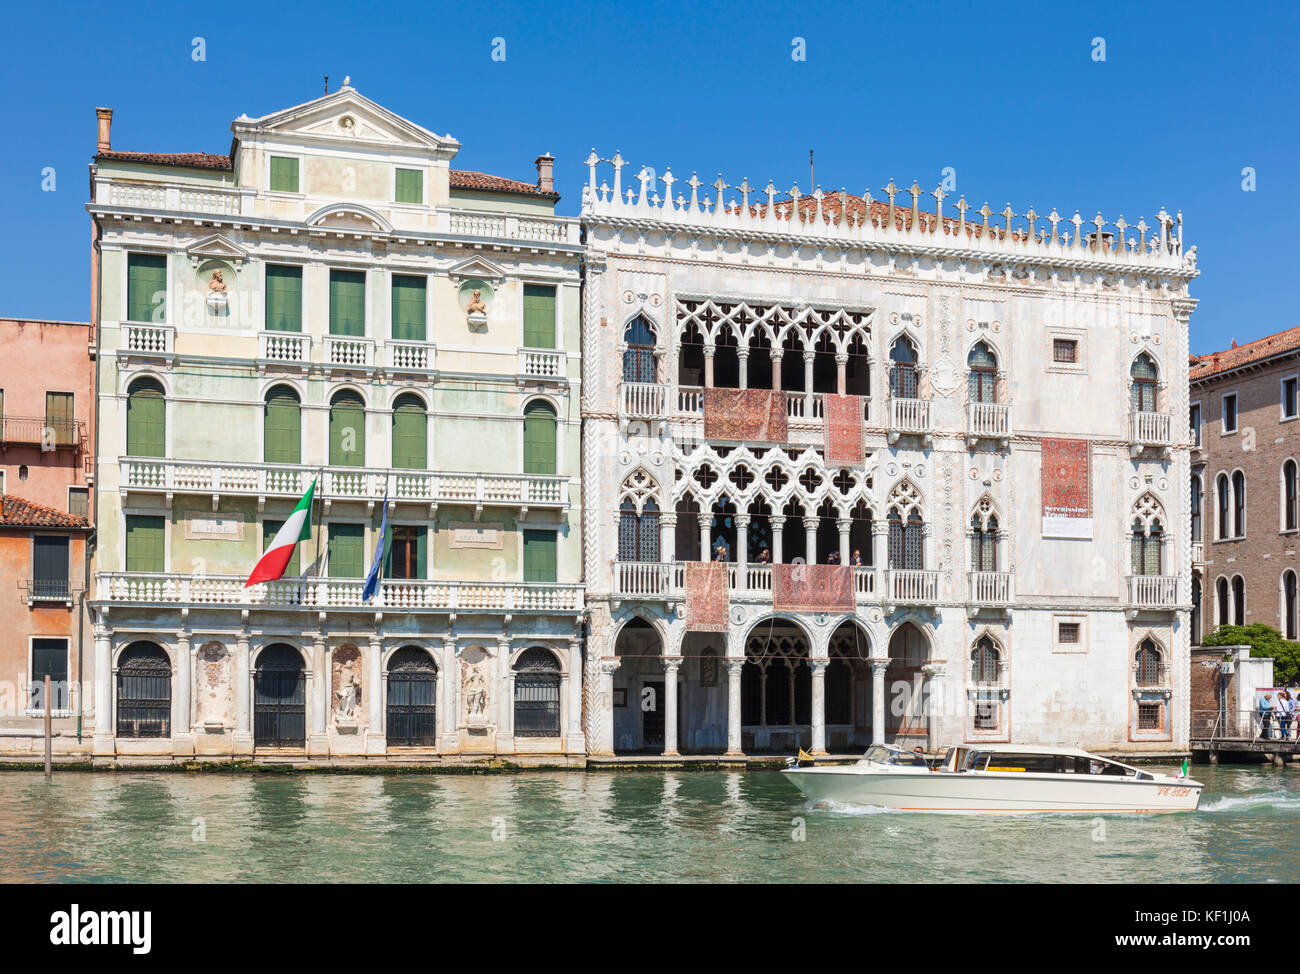 Venise Italie Venise Ca' d'Oro ou le Palazzo Santa Sofia accueil de la Galerie Franchetti de l'art de la Renaissance Grand canal Venise Italie Europe de l'UE Banque D'Images